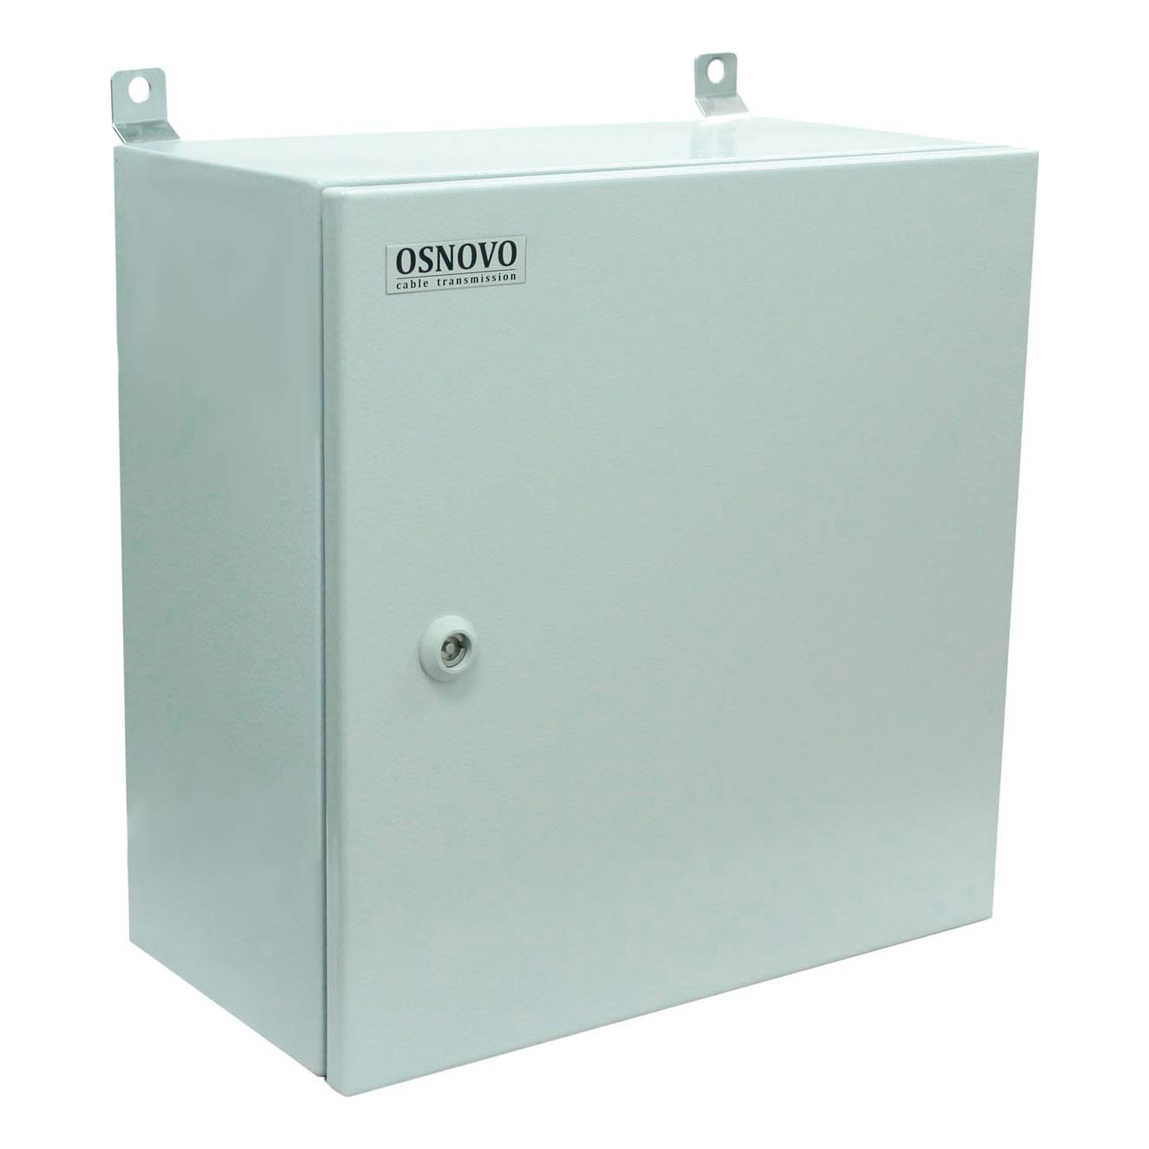 OSNOVO OS-44TB1(SW-80802/ILS(port 90W)) OS-44TB1(SW-80802/ILS(port 90W)) Уличный управляемый (L2+) коммутатор на 10 портов с термостабилизацией, резервным питанием и функцией мониторинга температуры/влажности/напряжения на базе уличной станции OS-44TB1